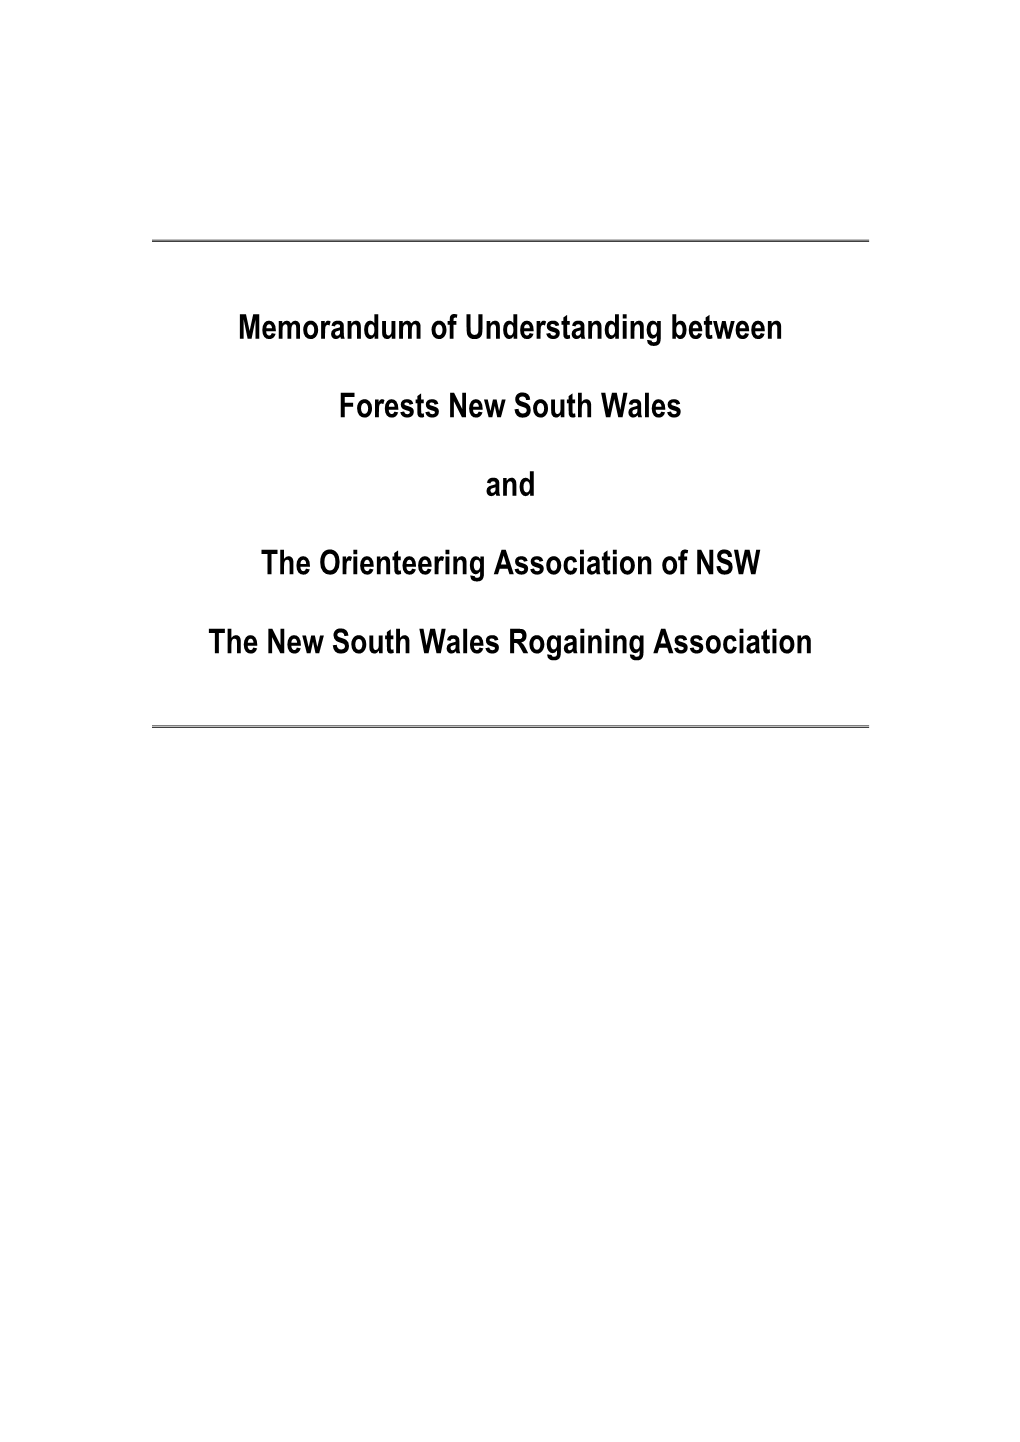 Memorandum of Understanding Between Forests New South Wales